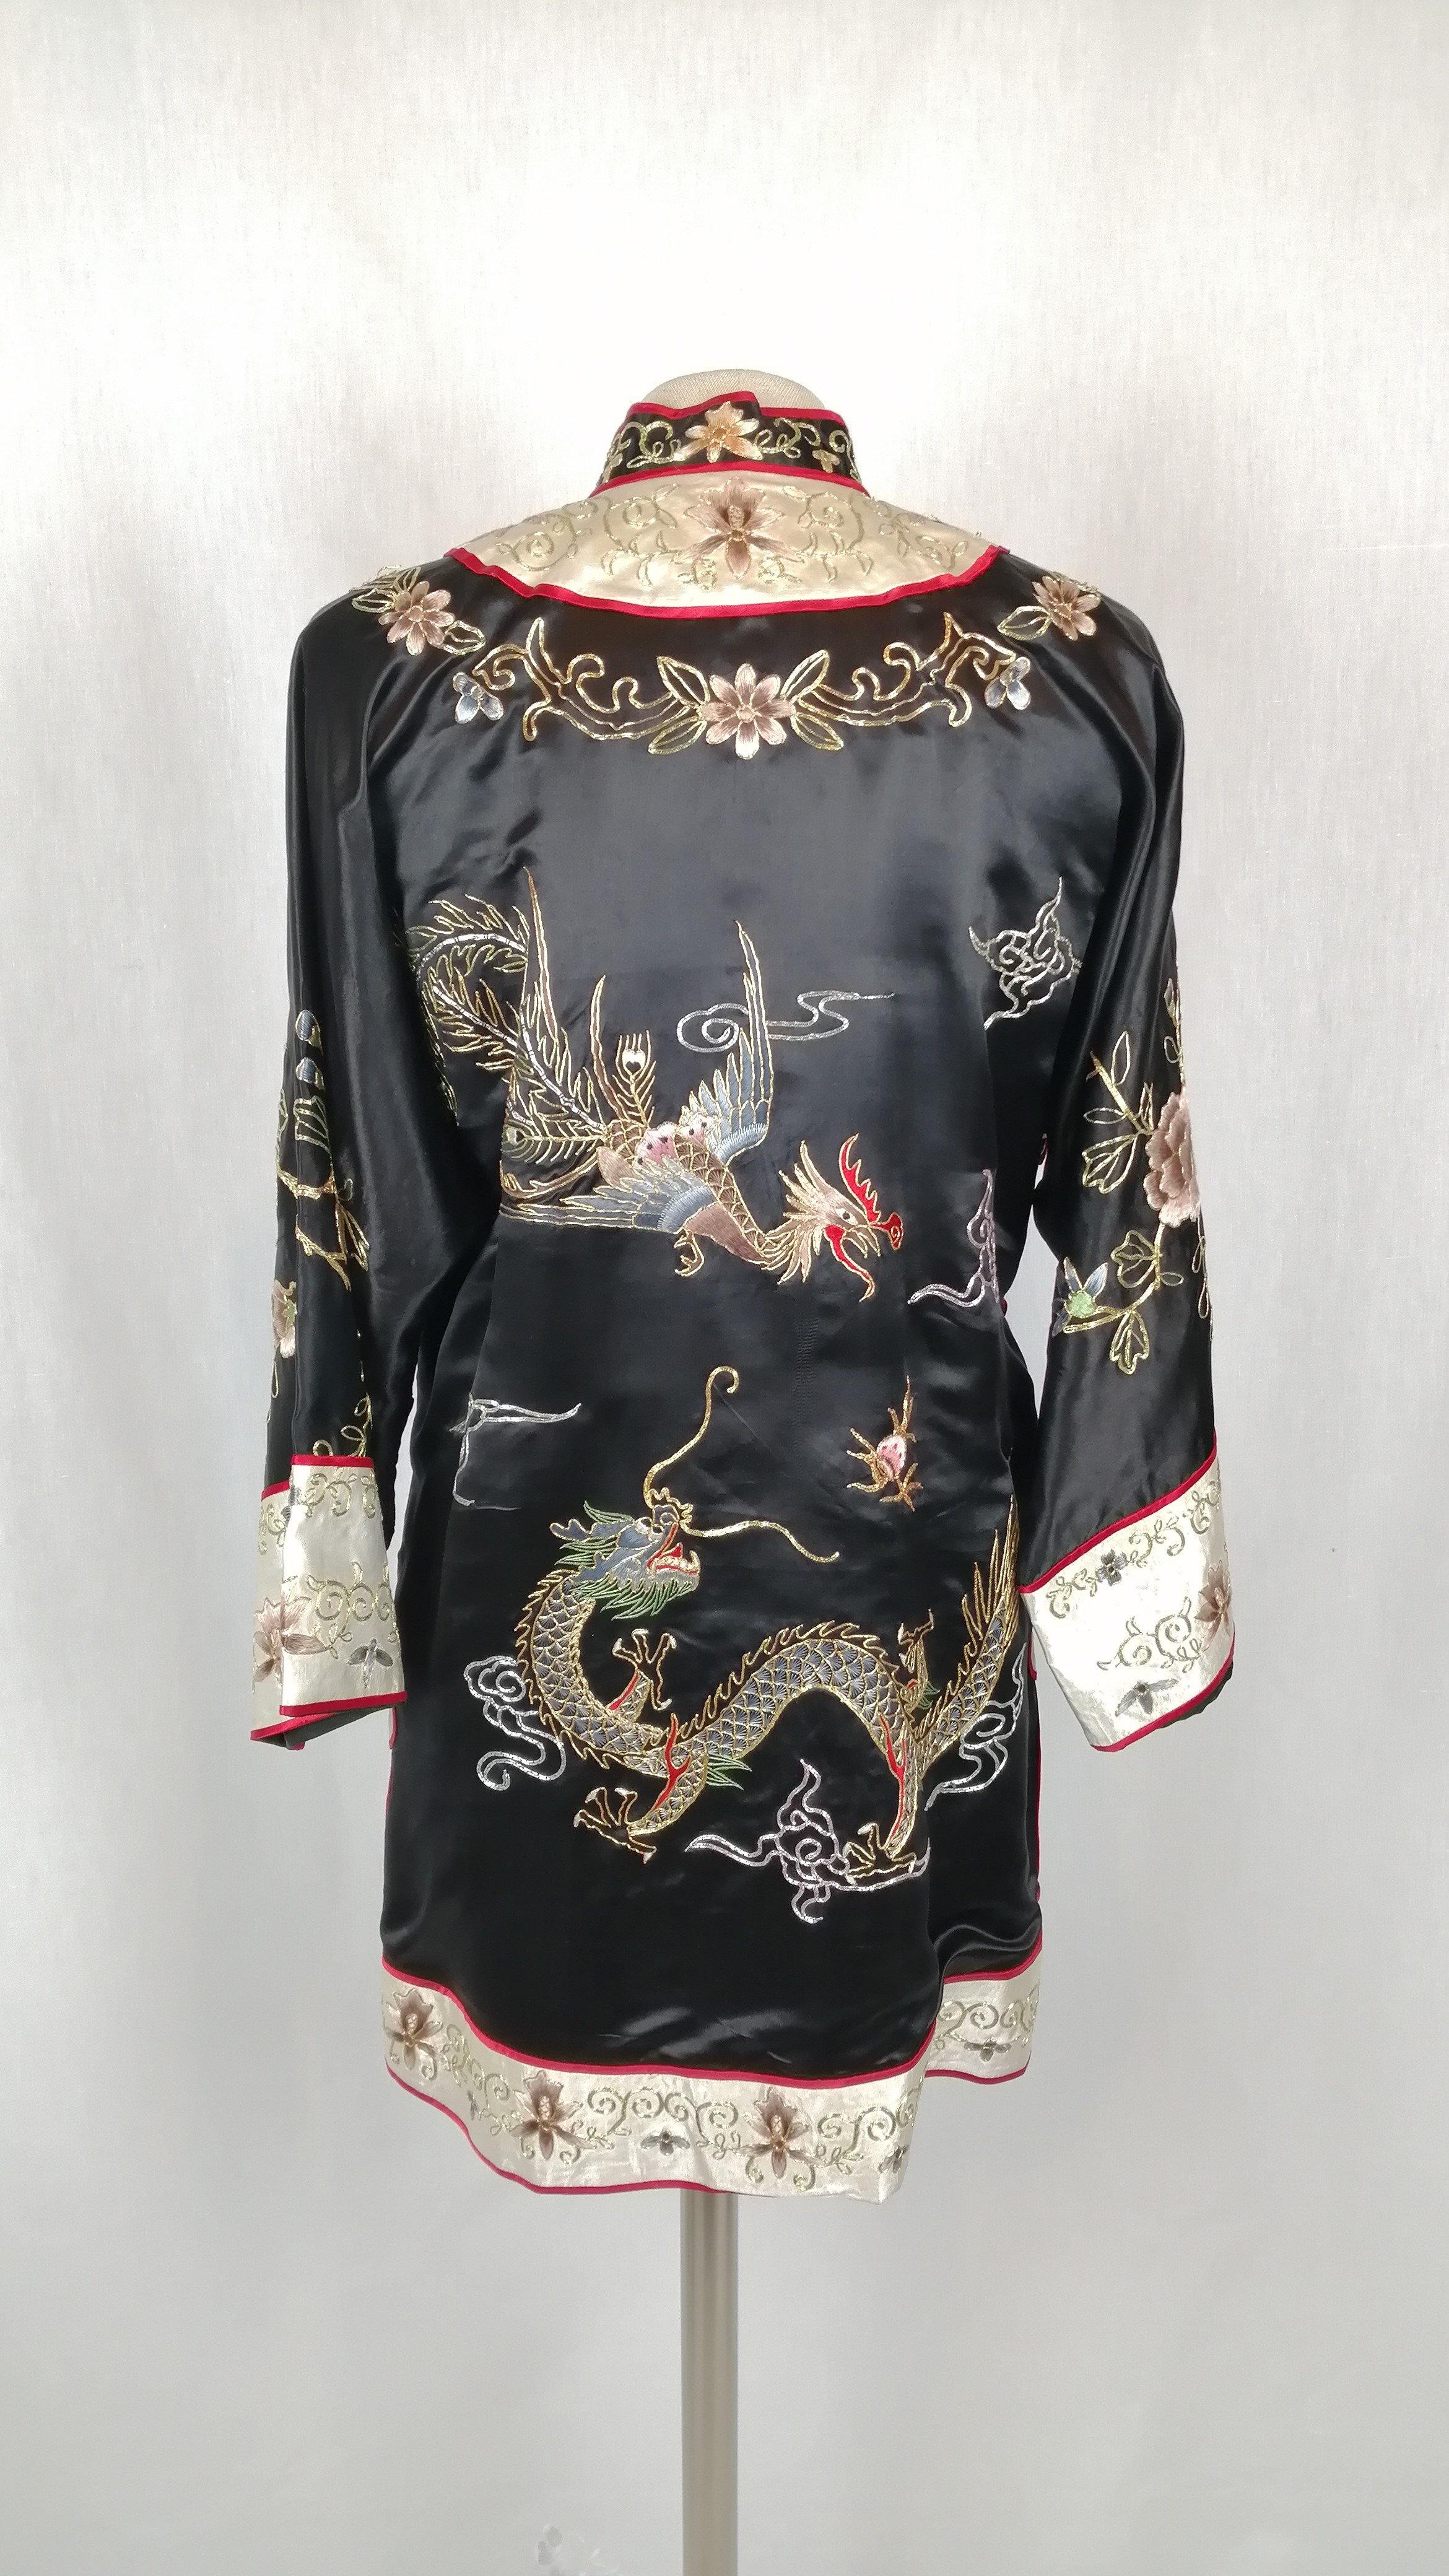 Coq et dragon - Tenue Ancienne - Au Bonheur Des Dames Toulouse - ABDD - Kimono, Soie, Vintage, Vêtement